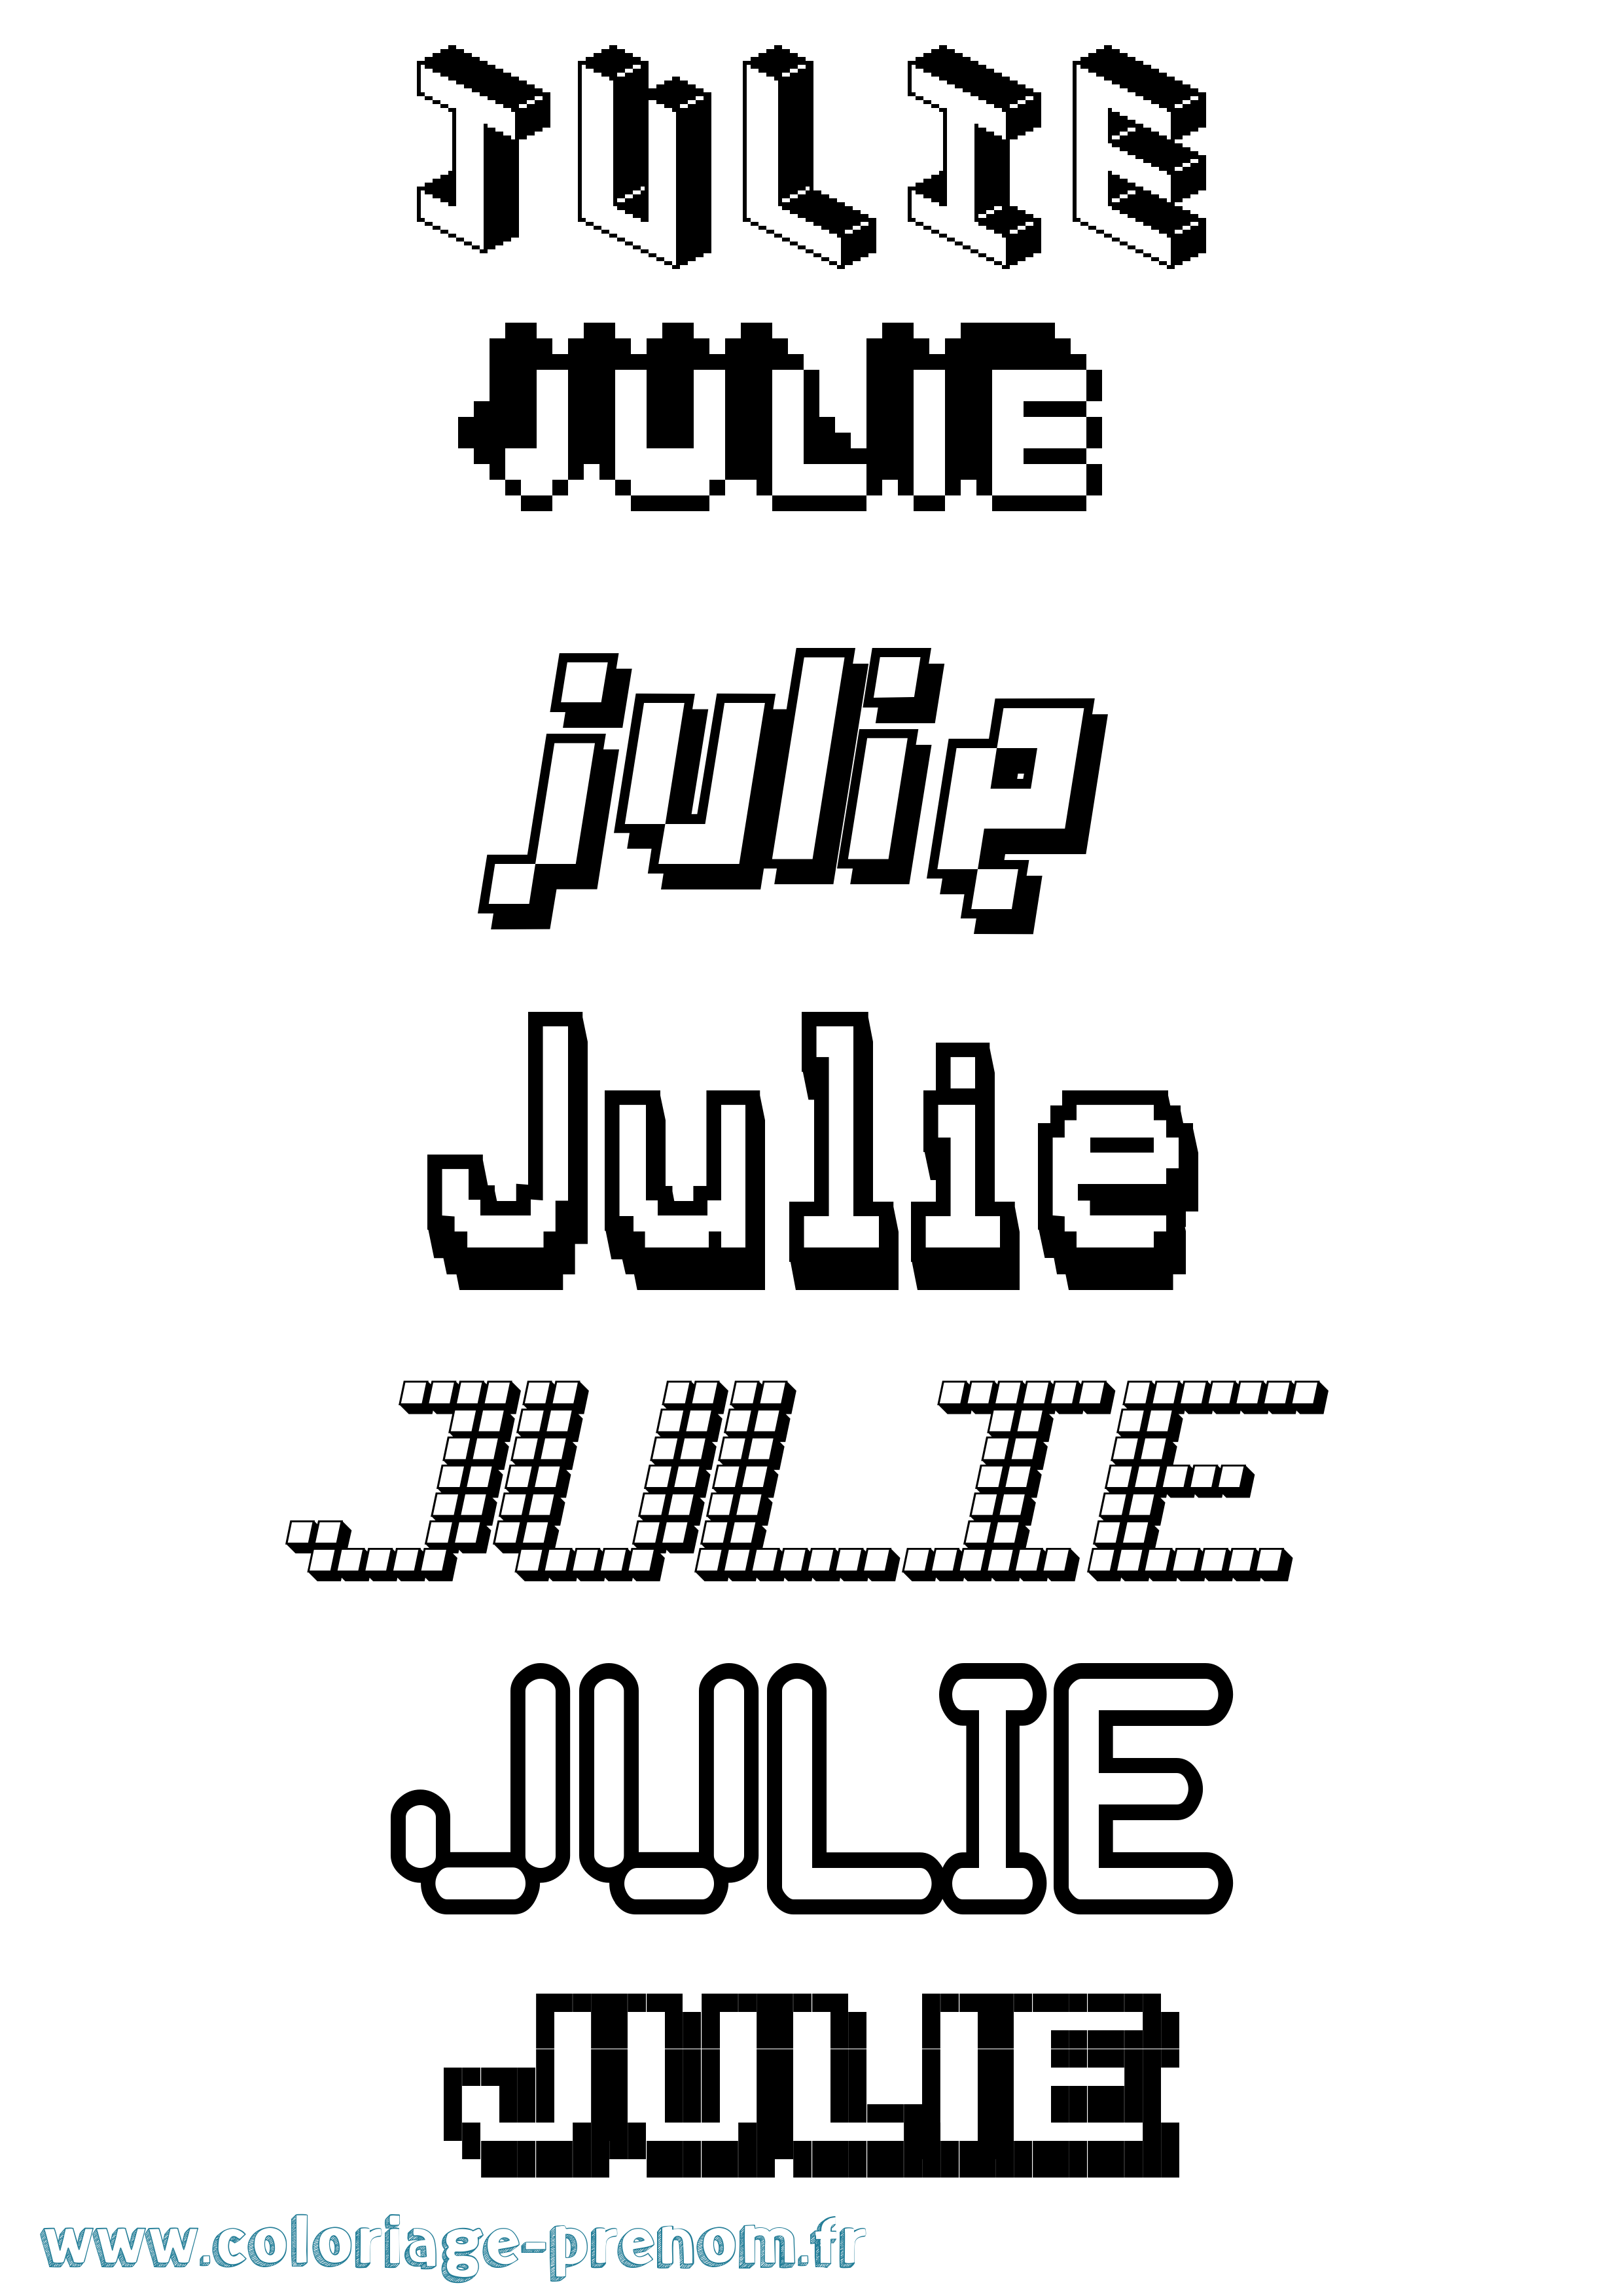 Coloriage prénom Julie Pixel